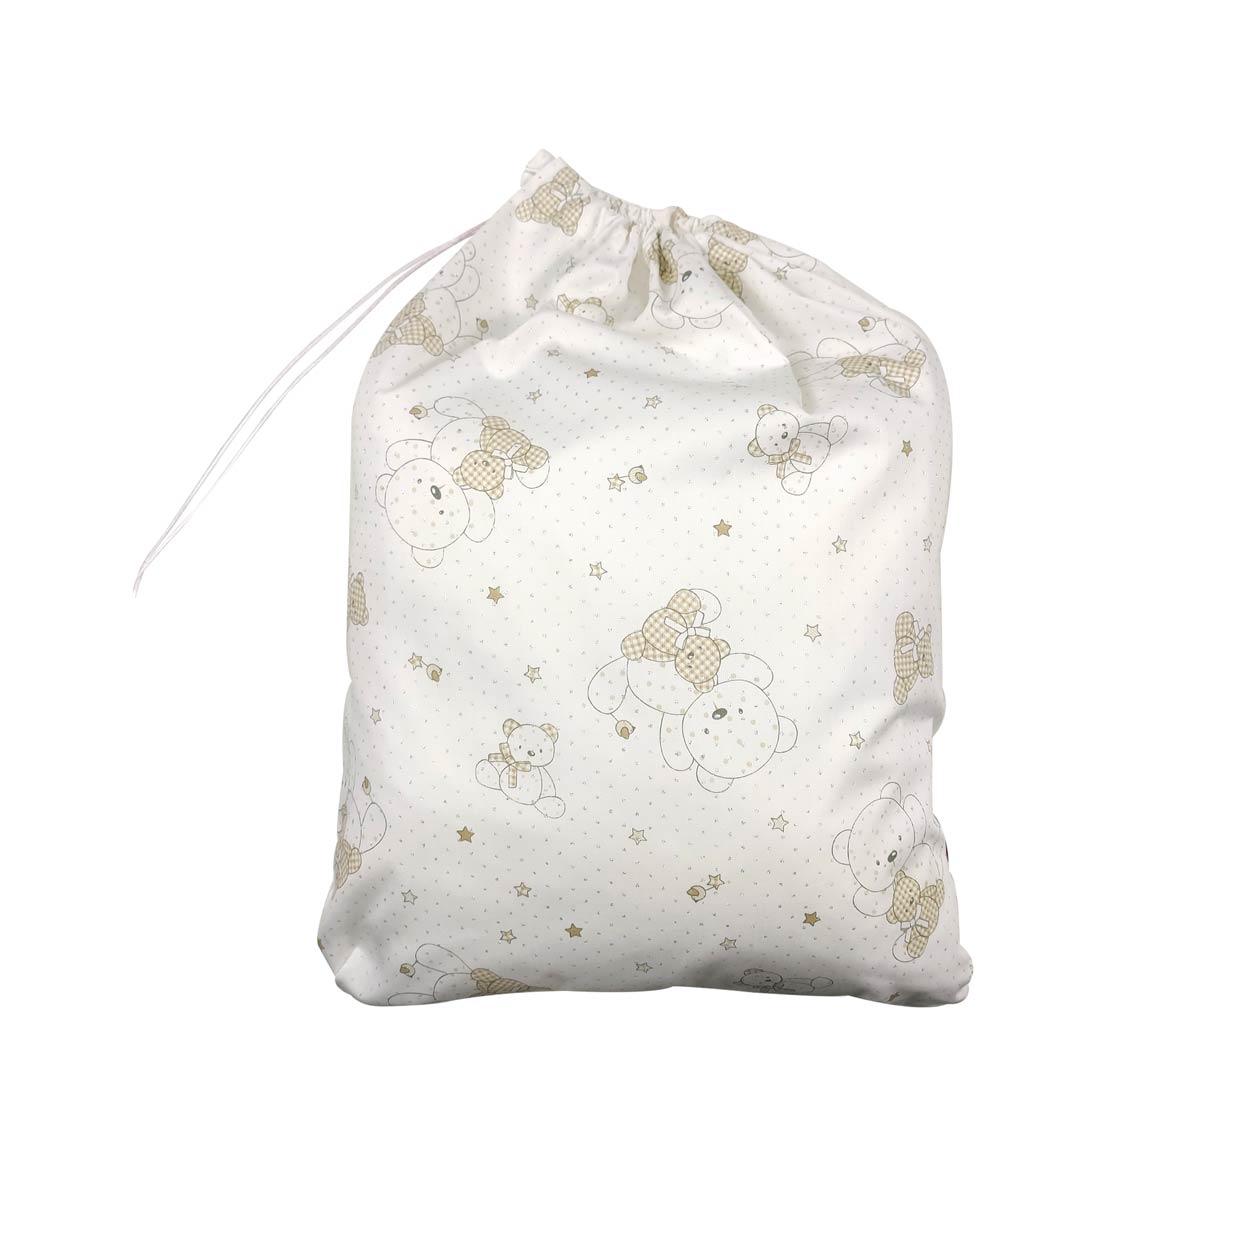 sacchetto per asilo orsetti lurex bianco